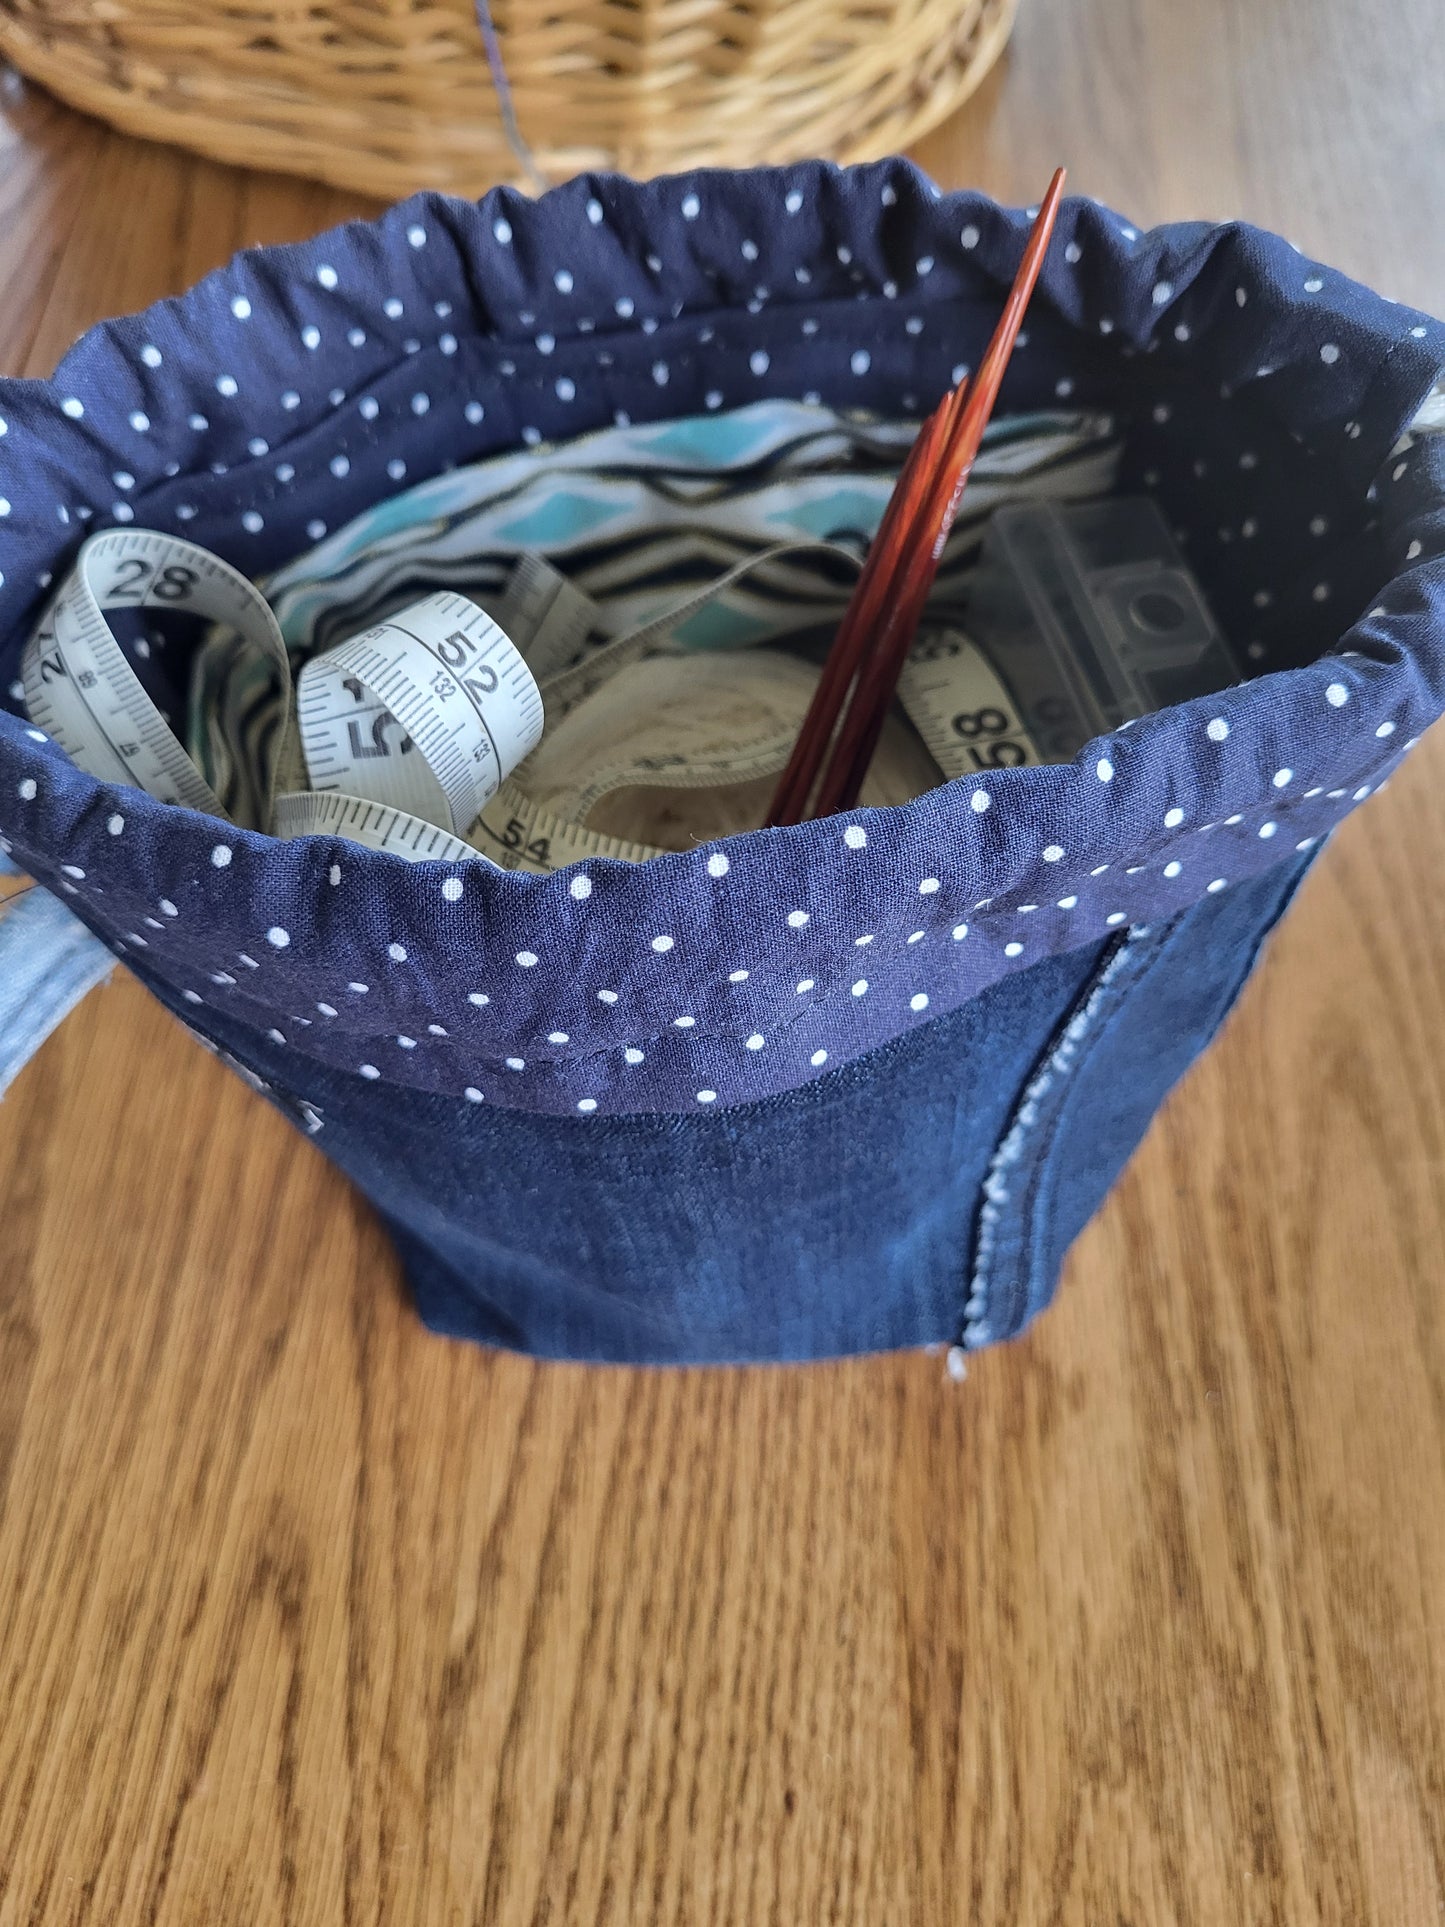 Adorable denim Sock Sack, Drawstring bag, small project bag, small storage bag